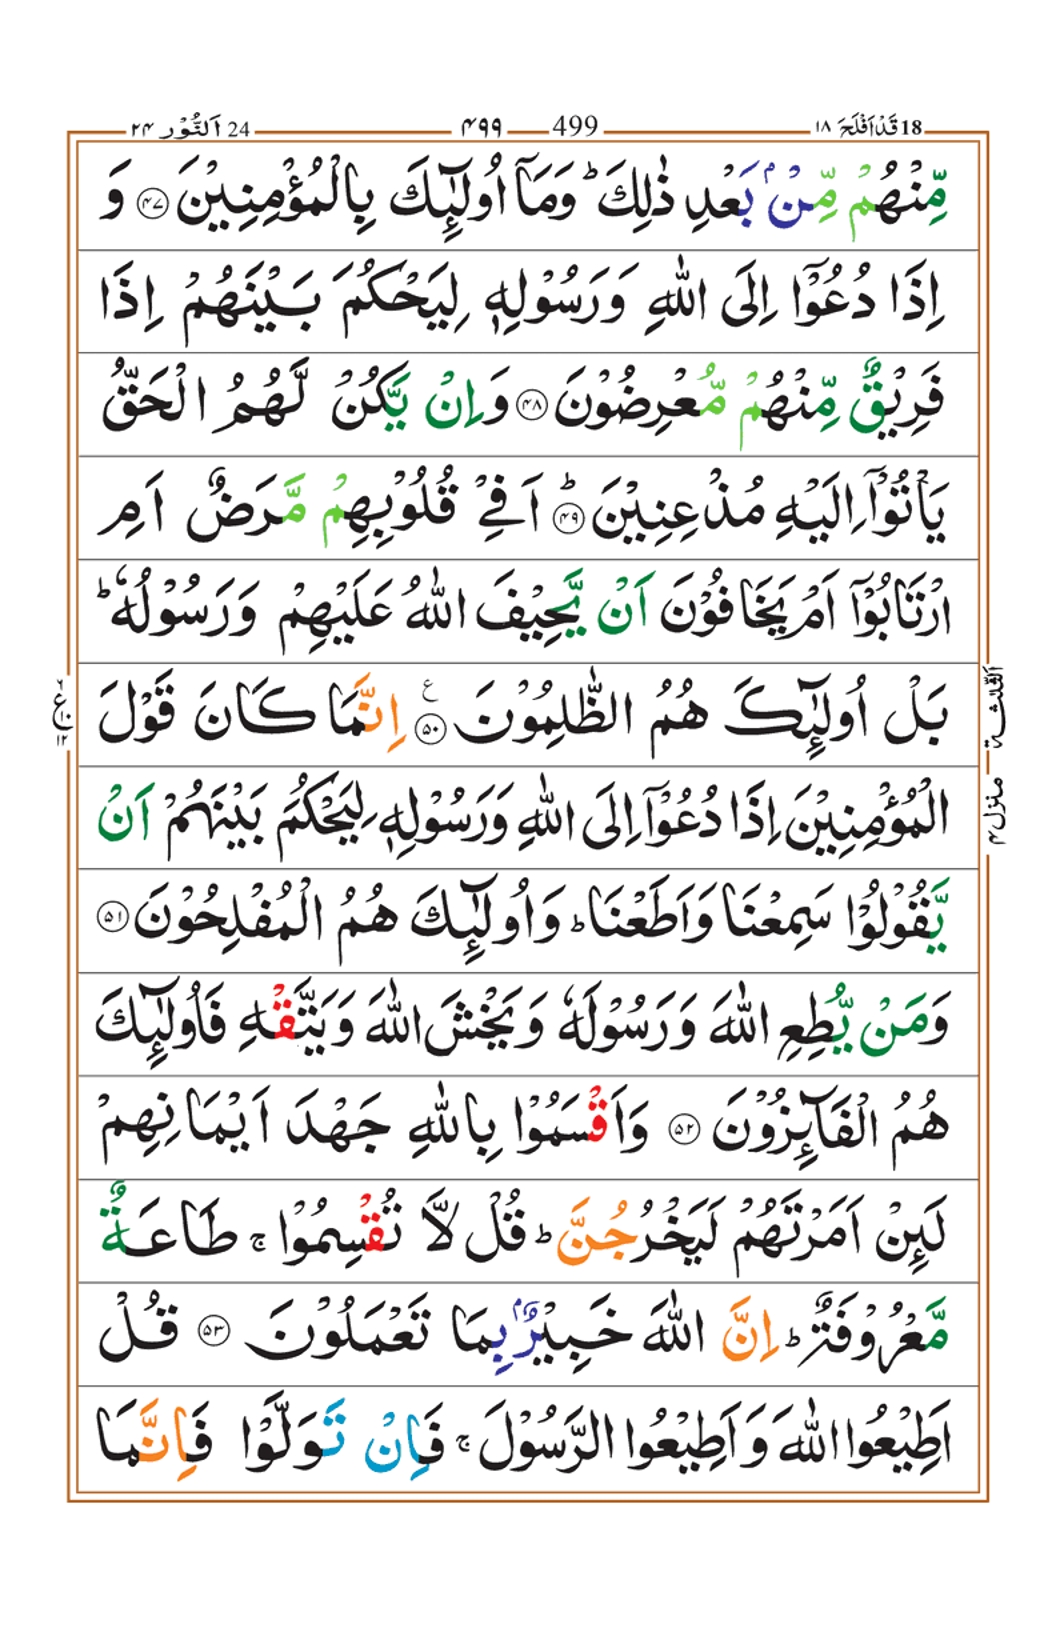 Surah-an-Nur-page-11